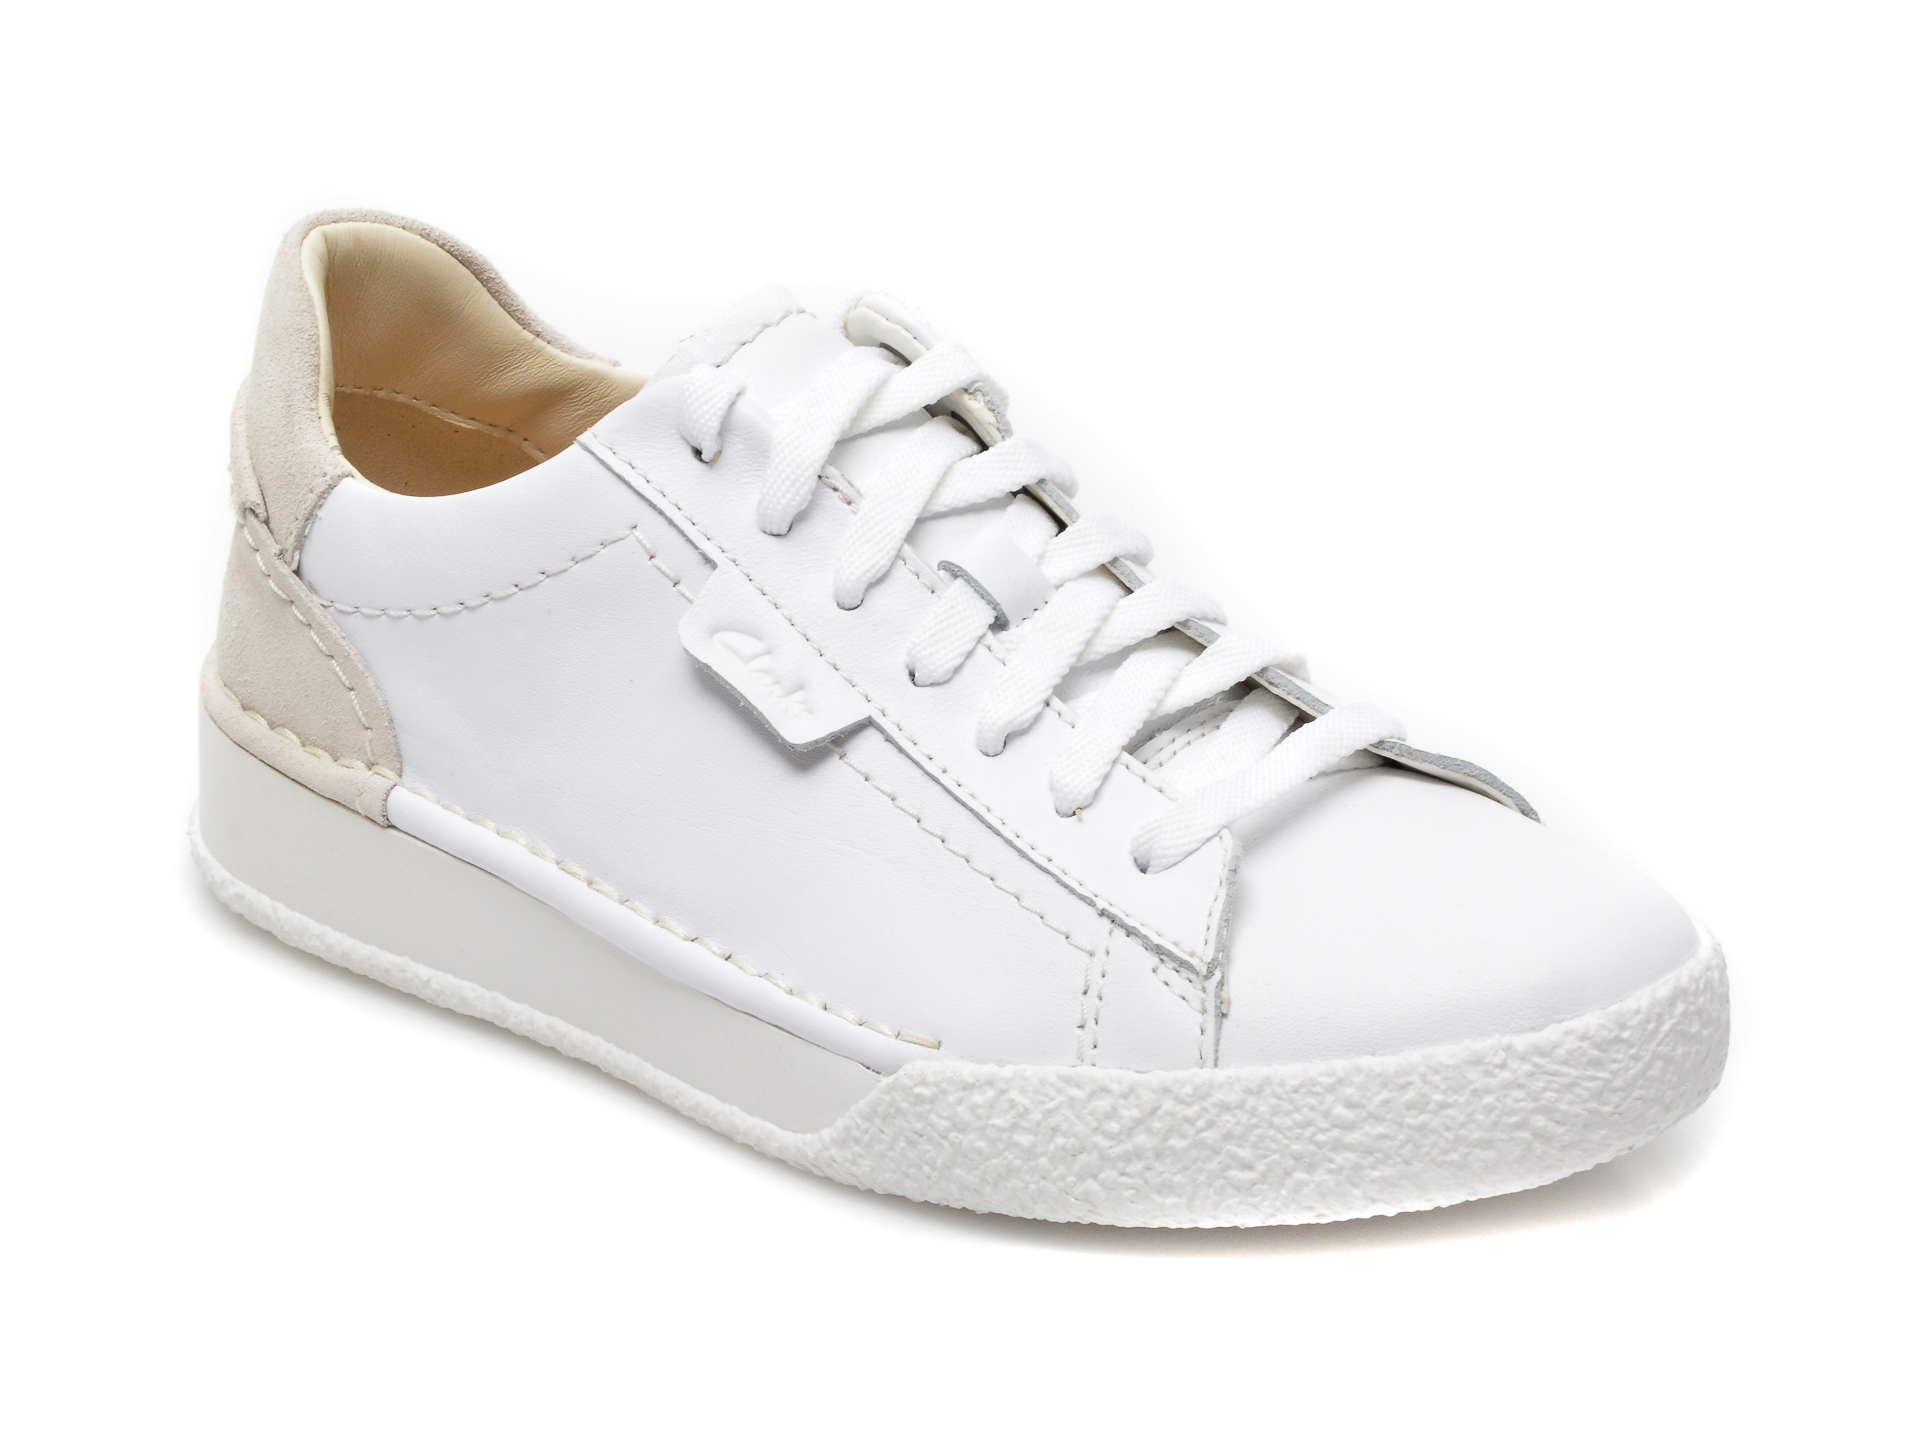 Pantofi sport CLARKS albi, CRAFT CUP LACE, din piele naturala Clarks imagine noua